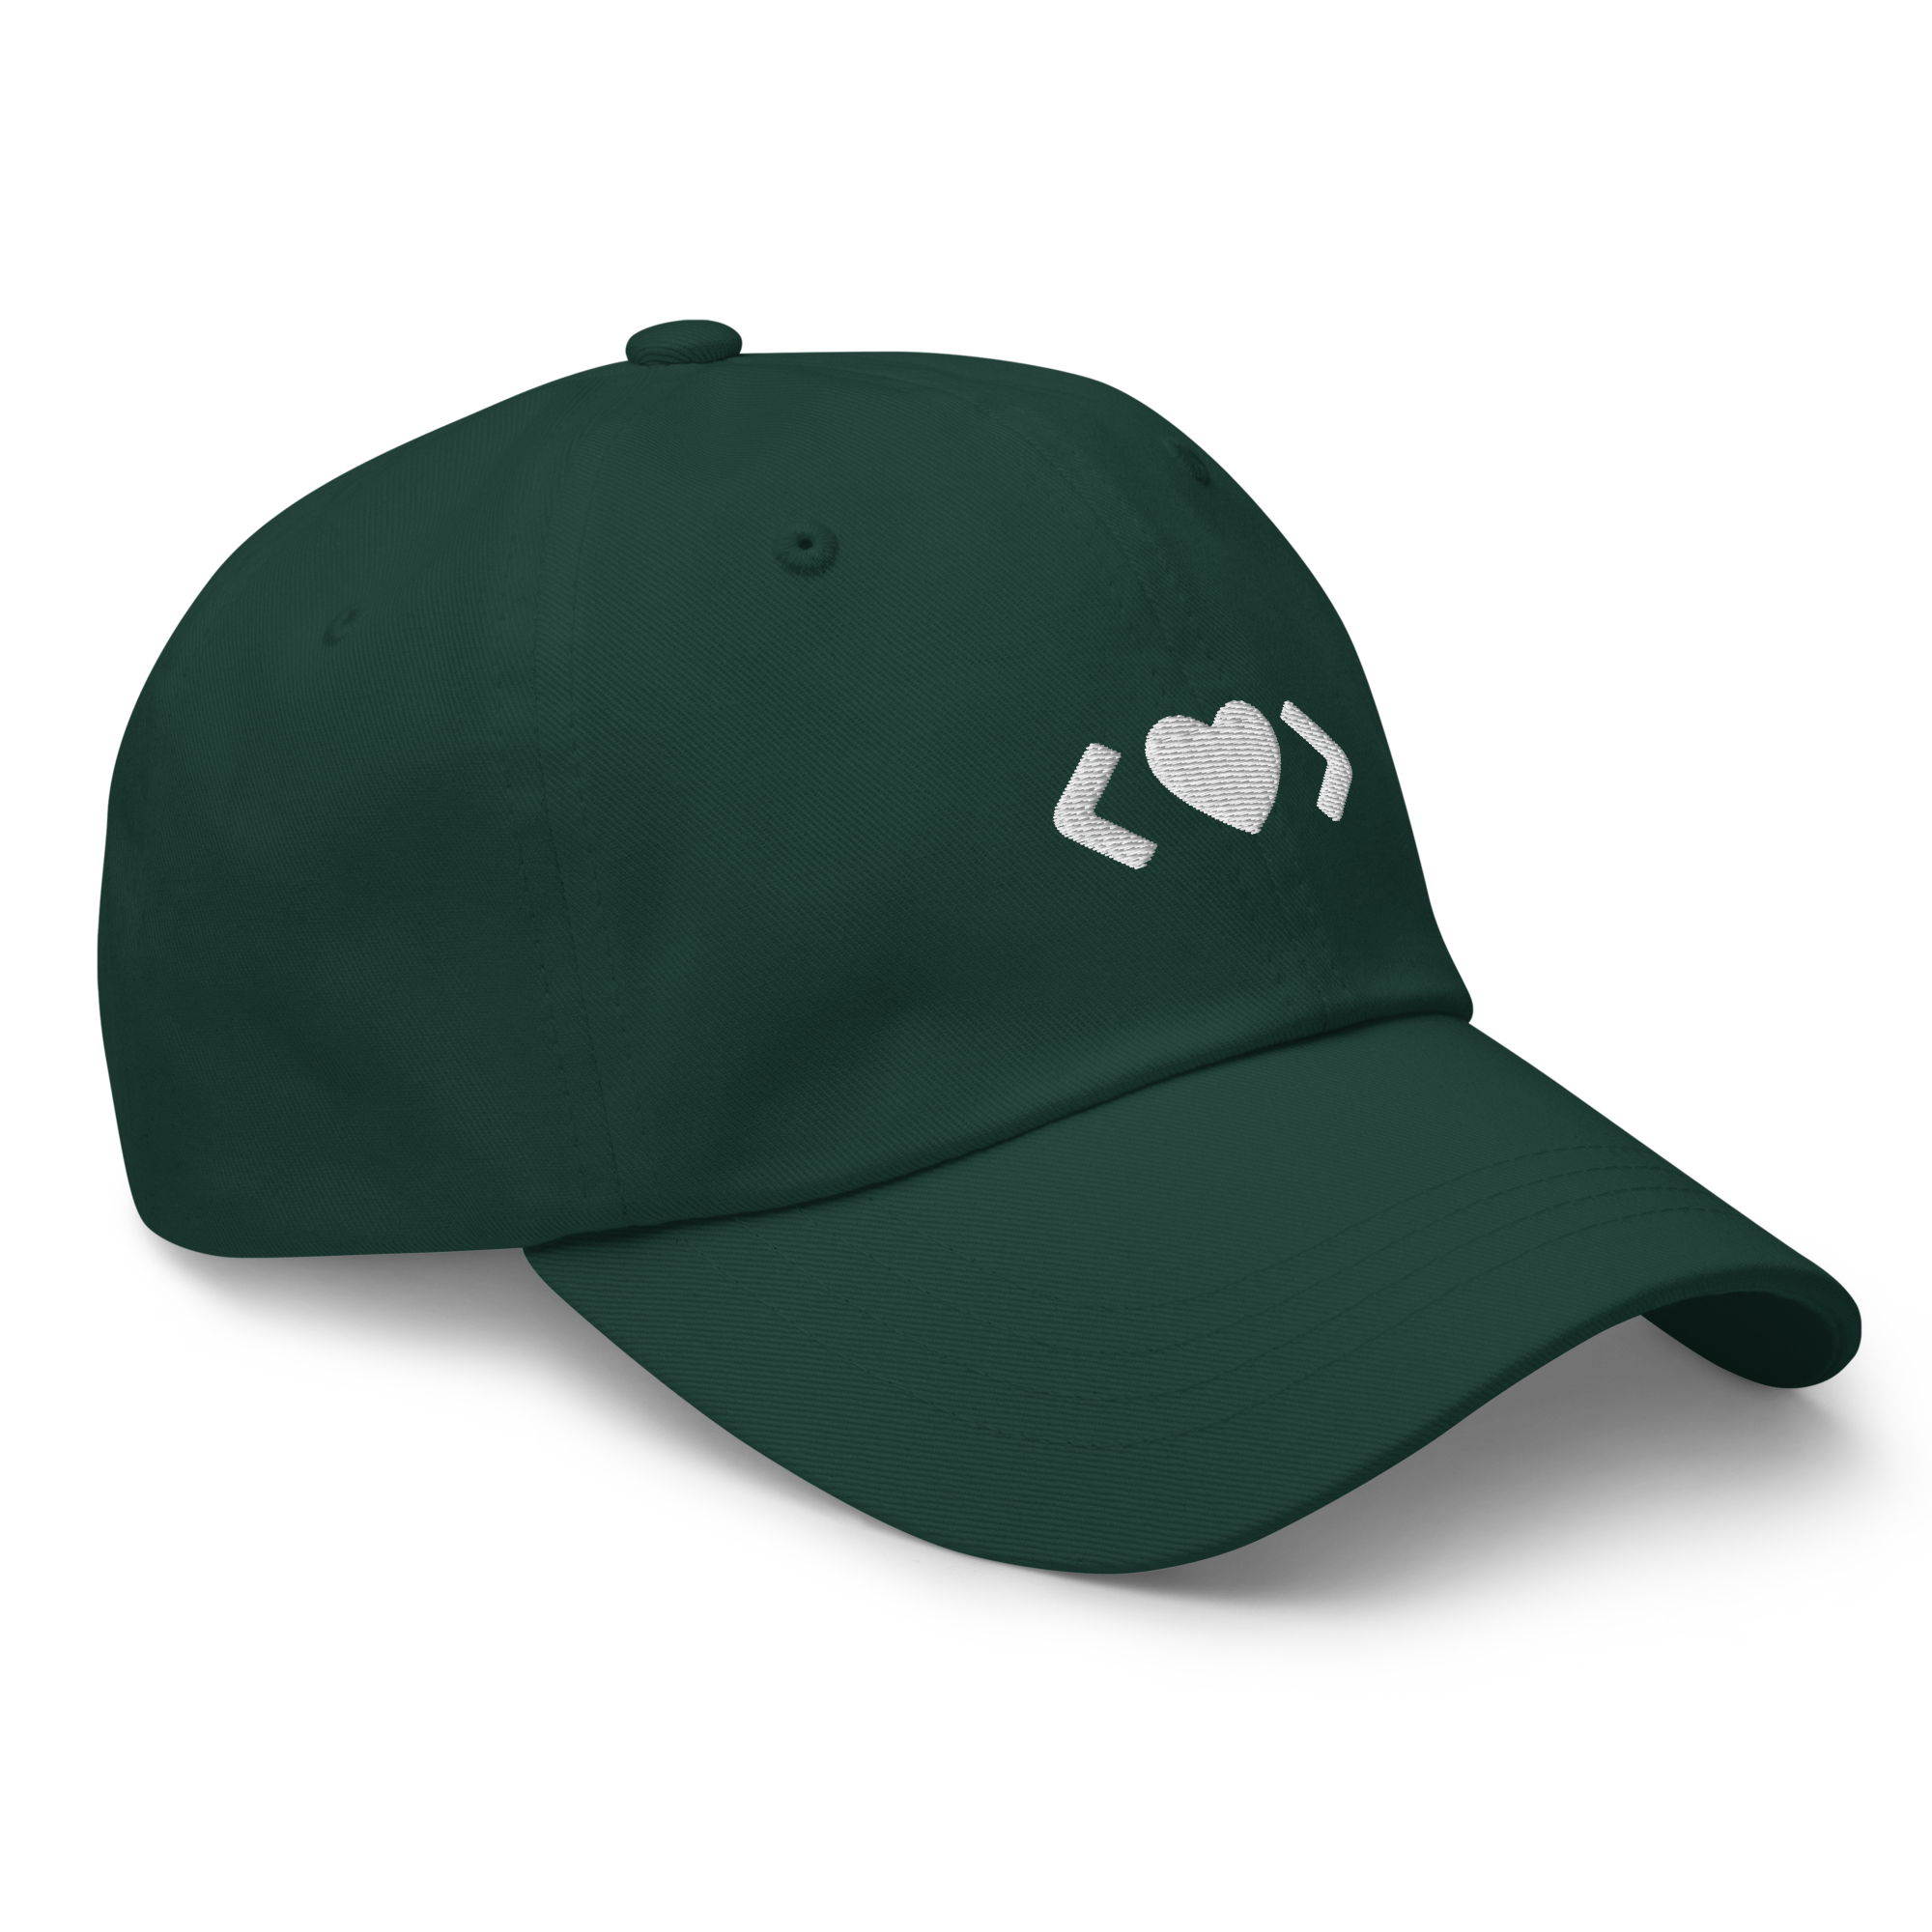 Code Heart Hat